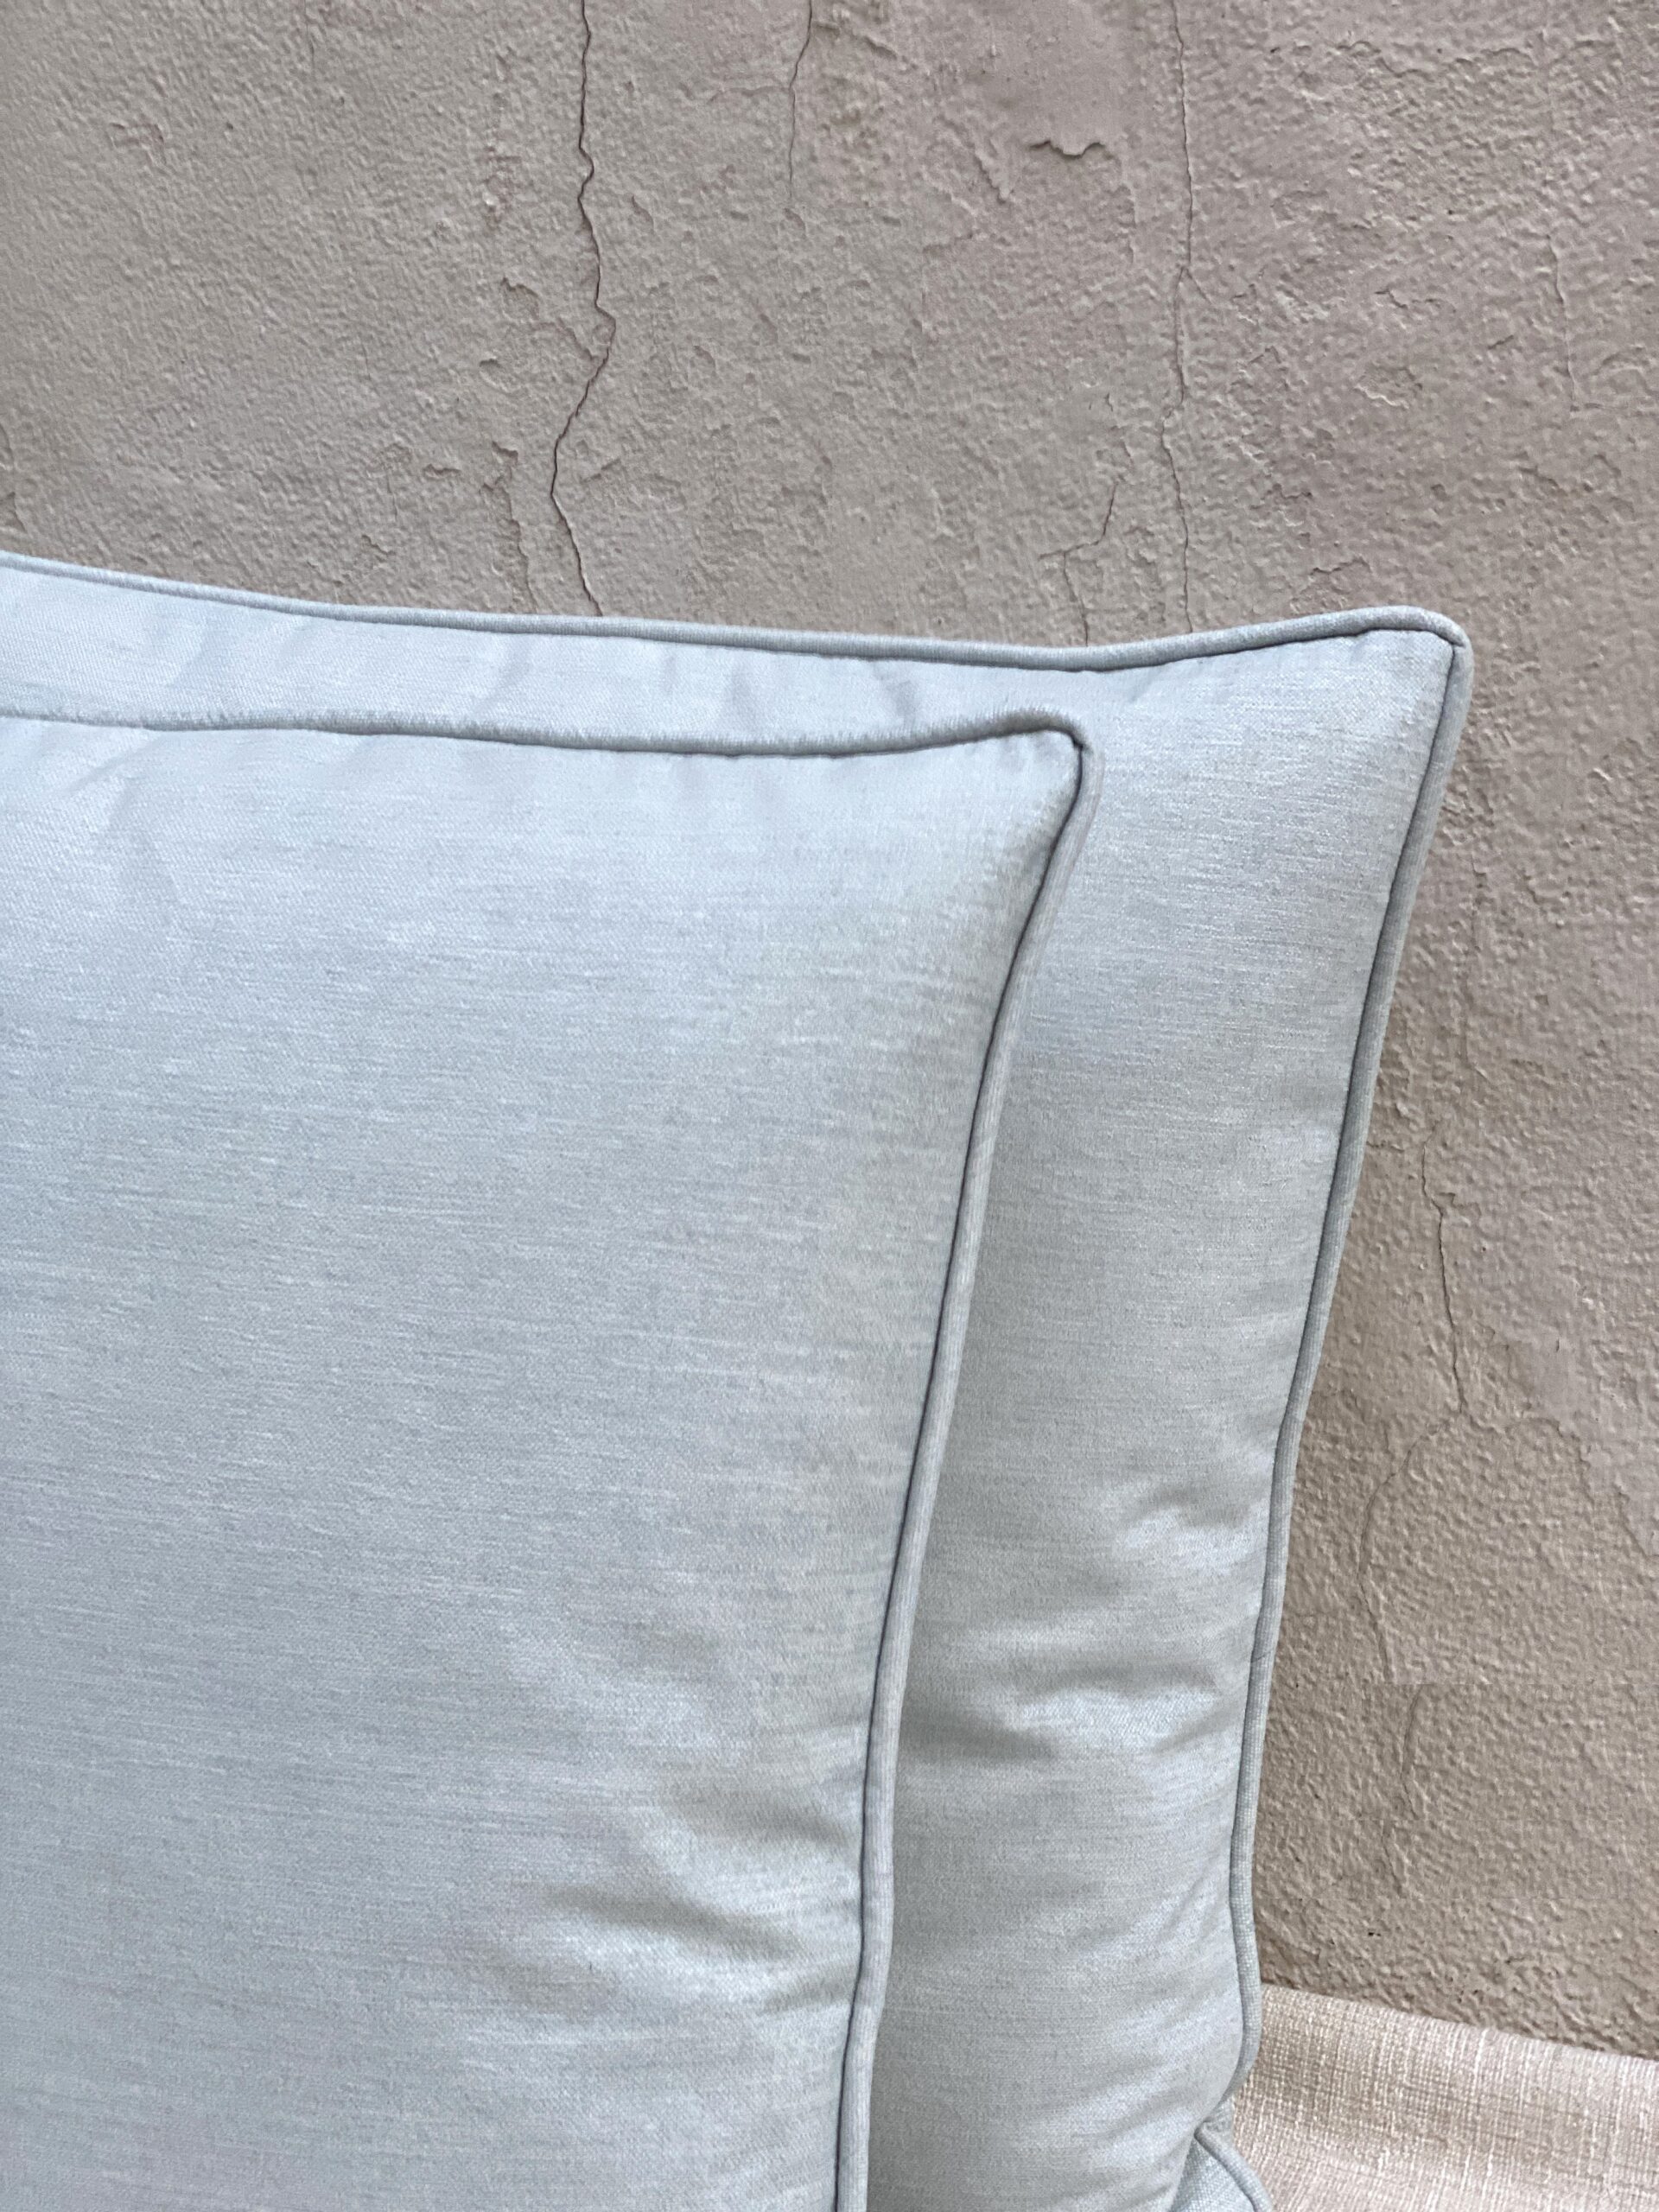 Thibaut Aura Pillows